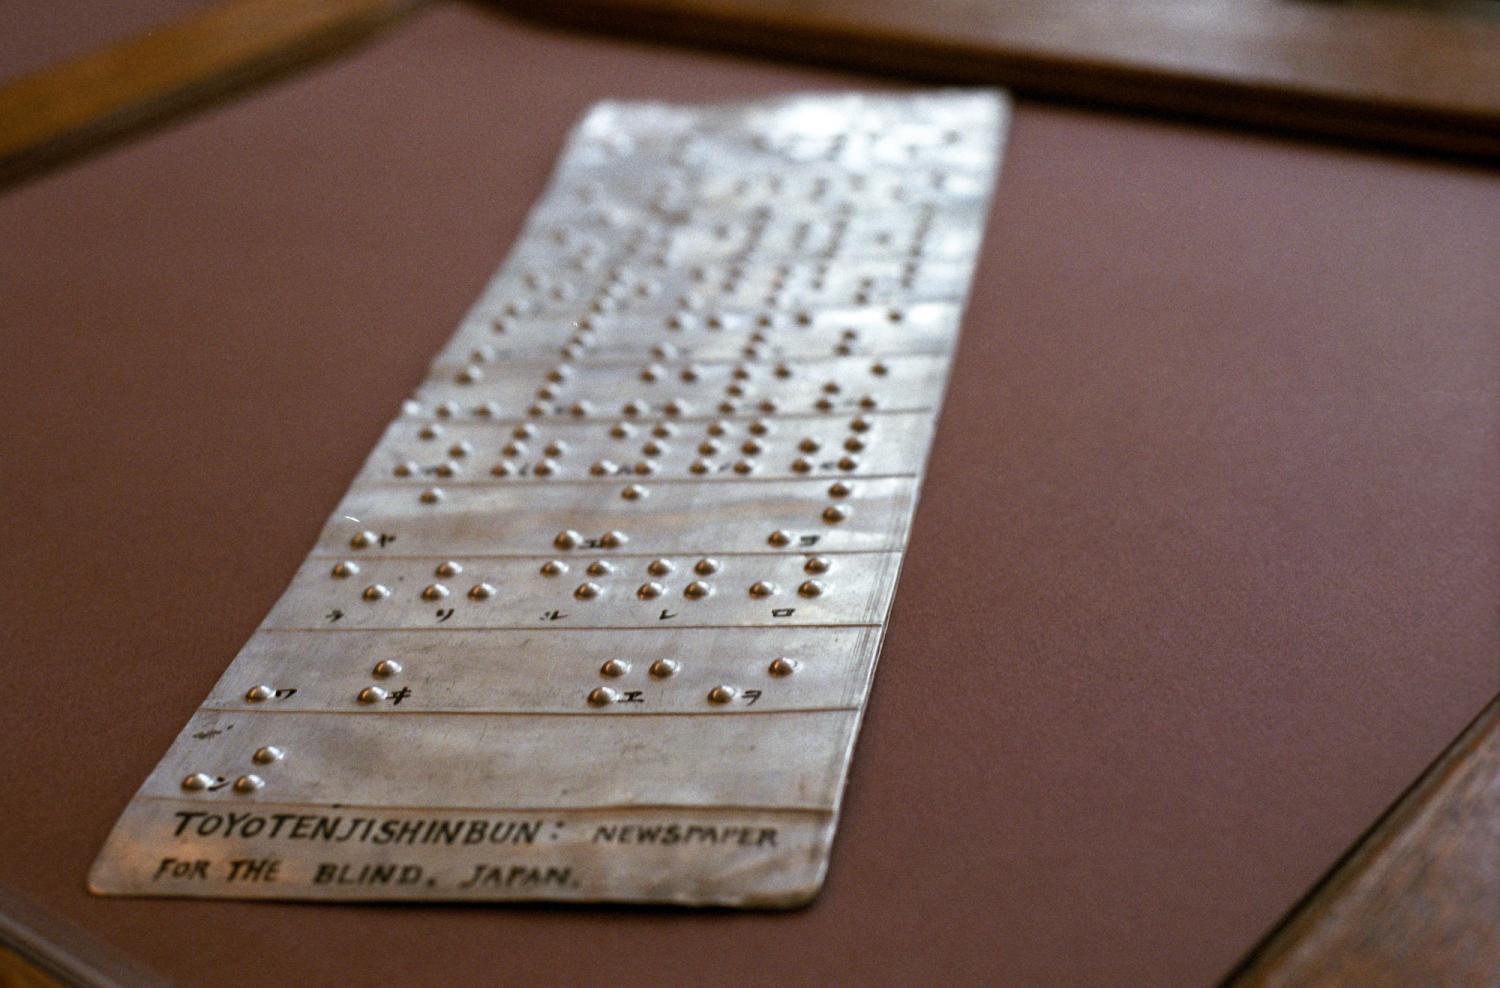 Au musée de l'Association Valentin Haüy, un plaque de métal légendée (en noir) : Toyotenjishinbun: Newspaper for the blind, Japan - décrit l'utilisation du braille en japonais. Paris, octobre 2005.